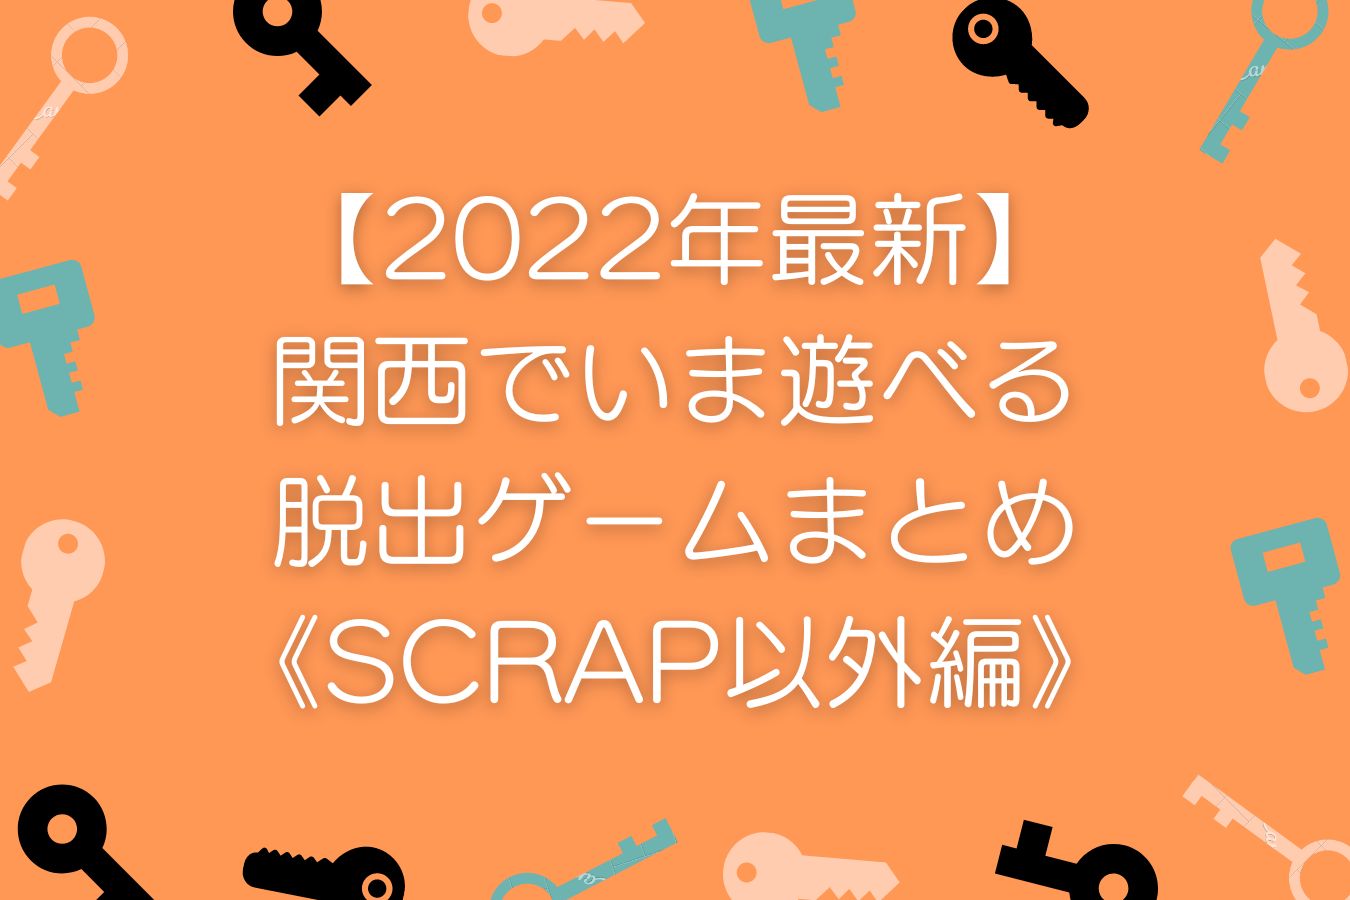 【2022年最新】関西でいま遊べる脱出ゲームまとめ《SCRAP以外編》